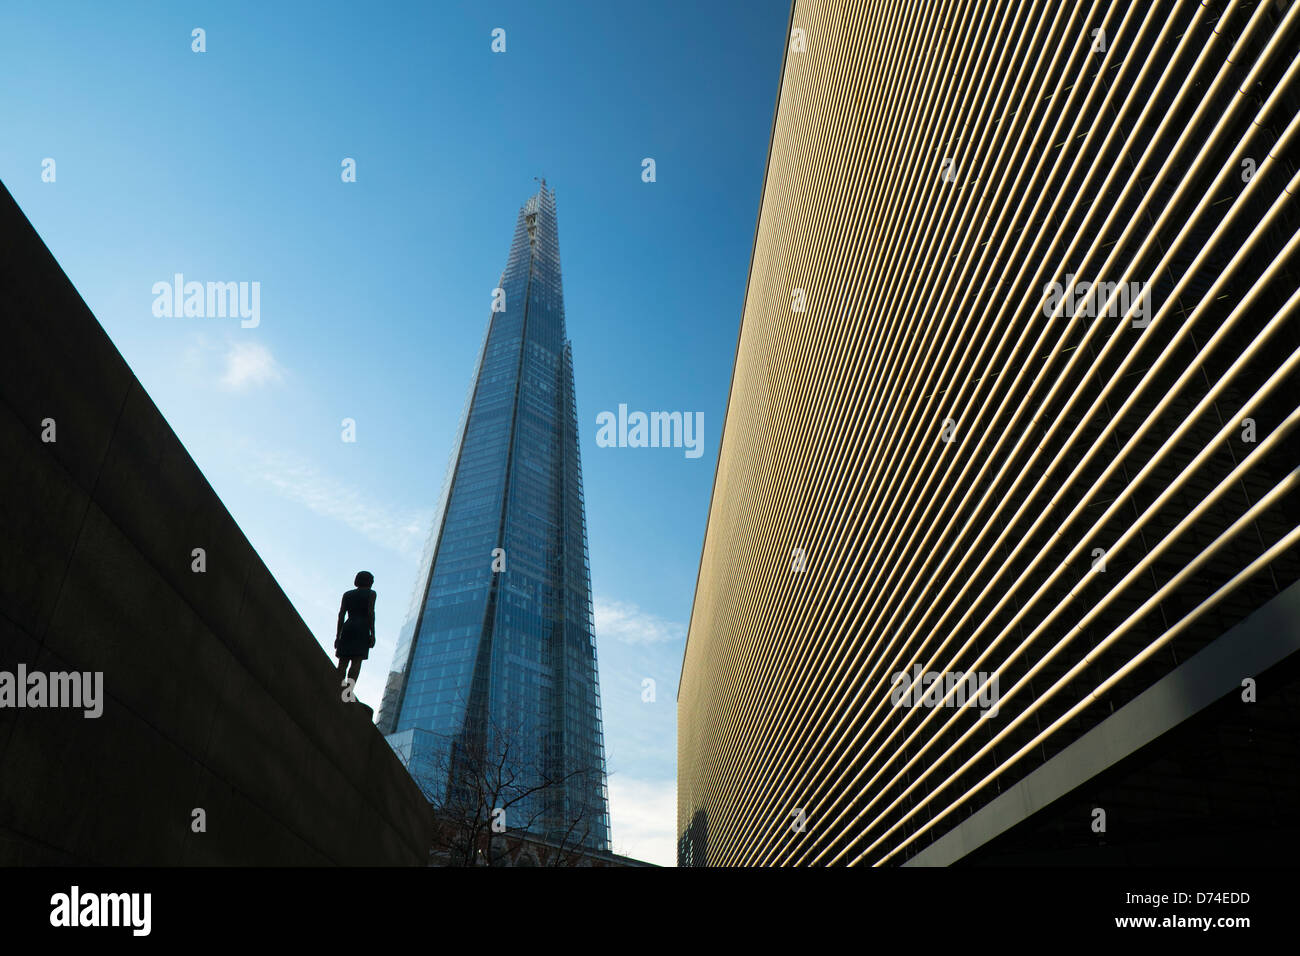 Le Shard immeuble de bureaux modernes, London, UK Banque D'Images